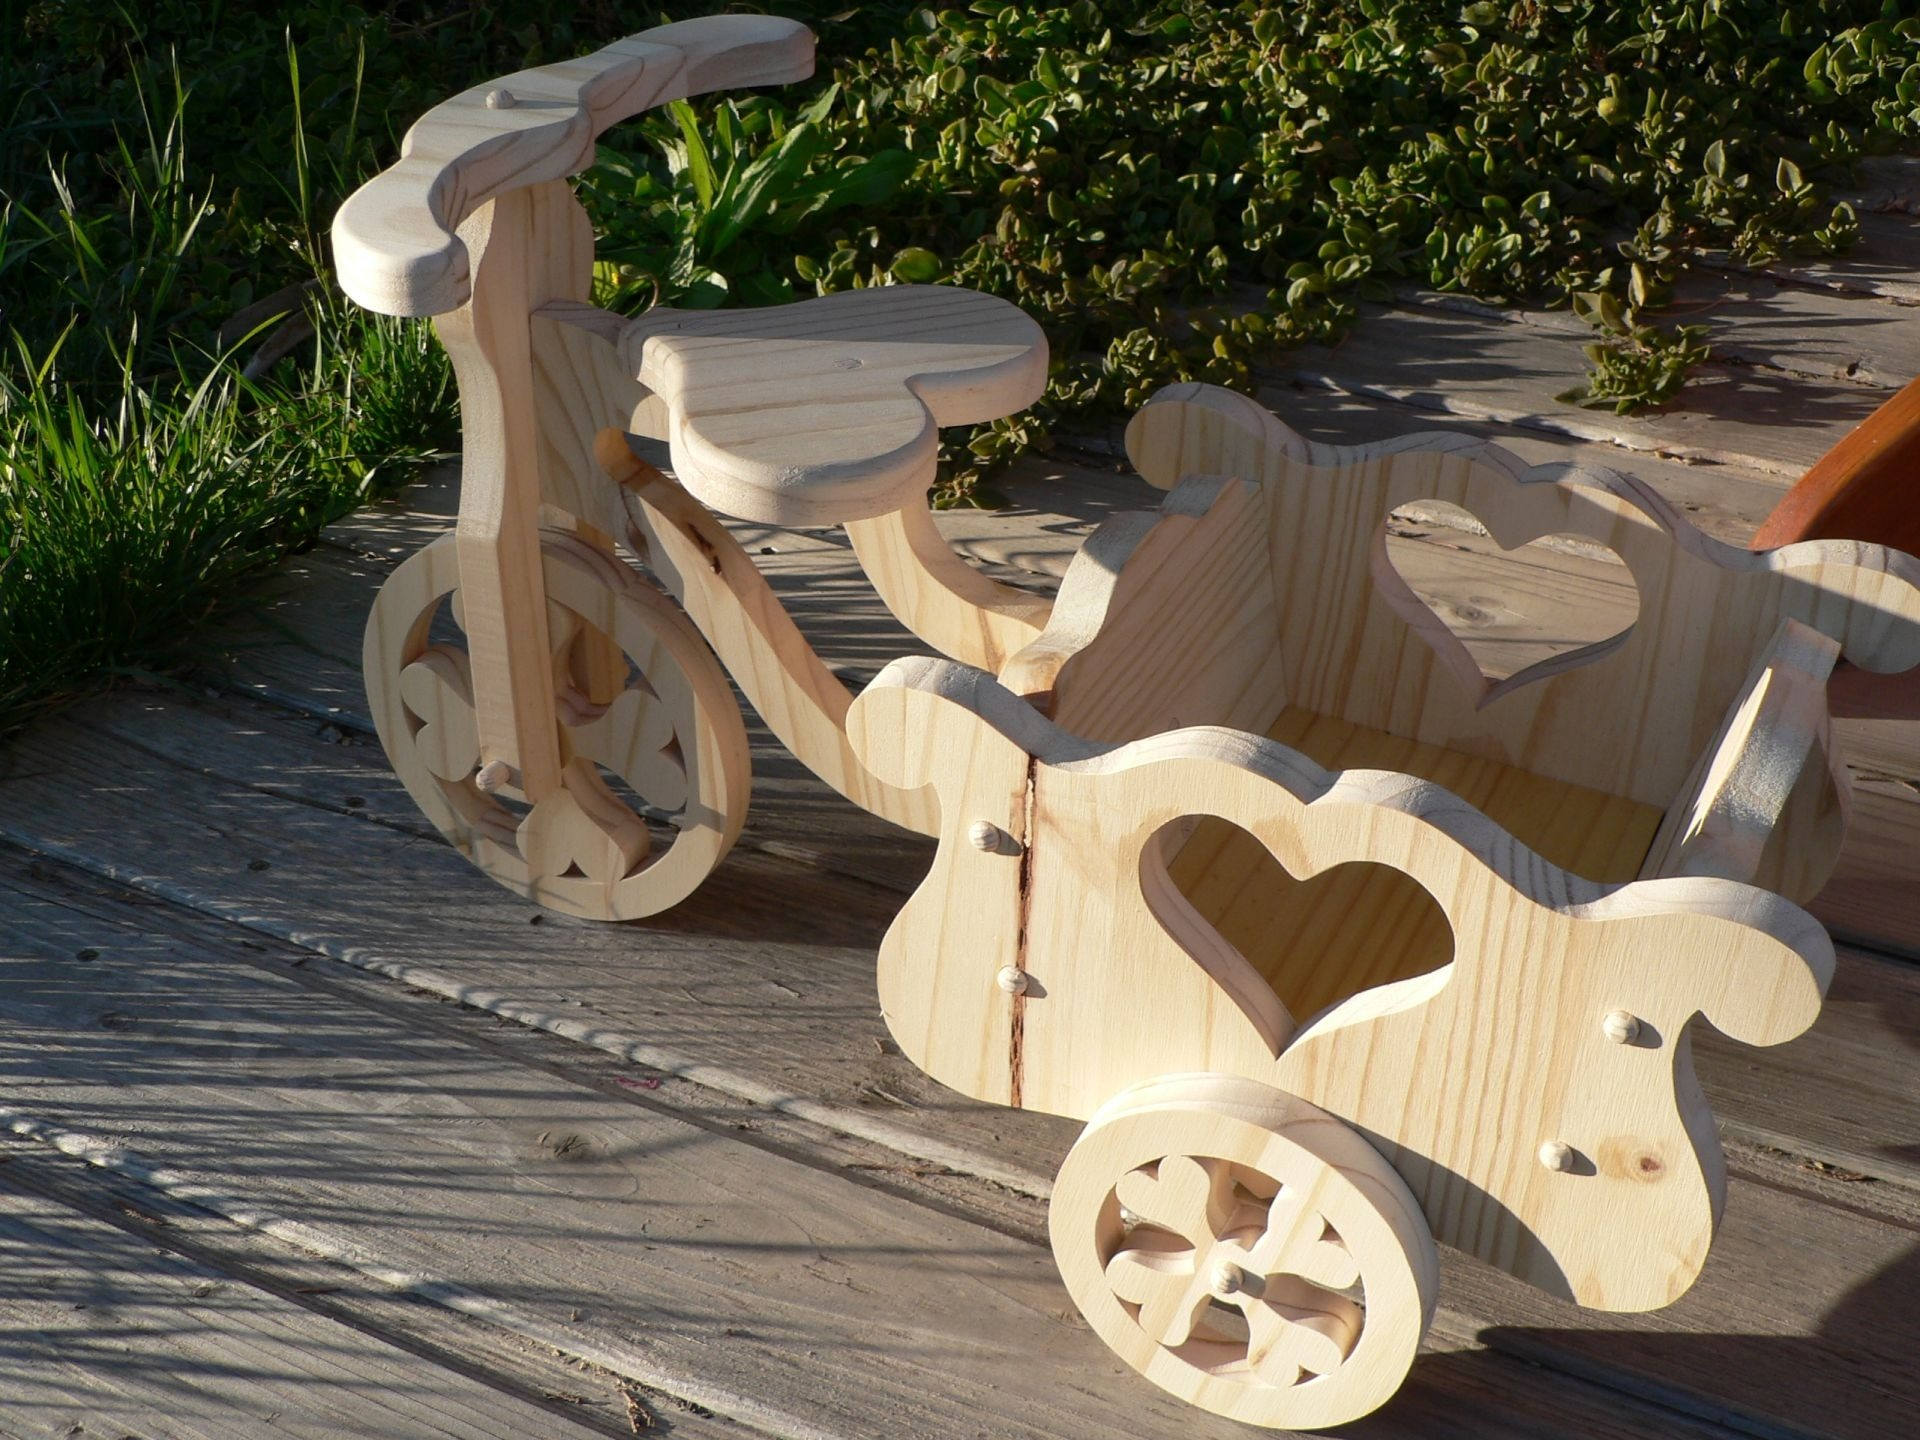 Tuto upcycling : fabriquer un vélo déco pour son jardin - Be Frenchie